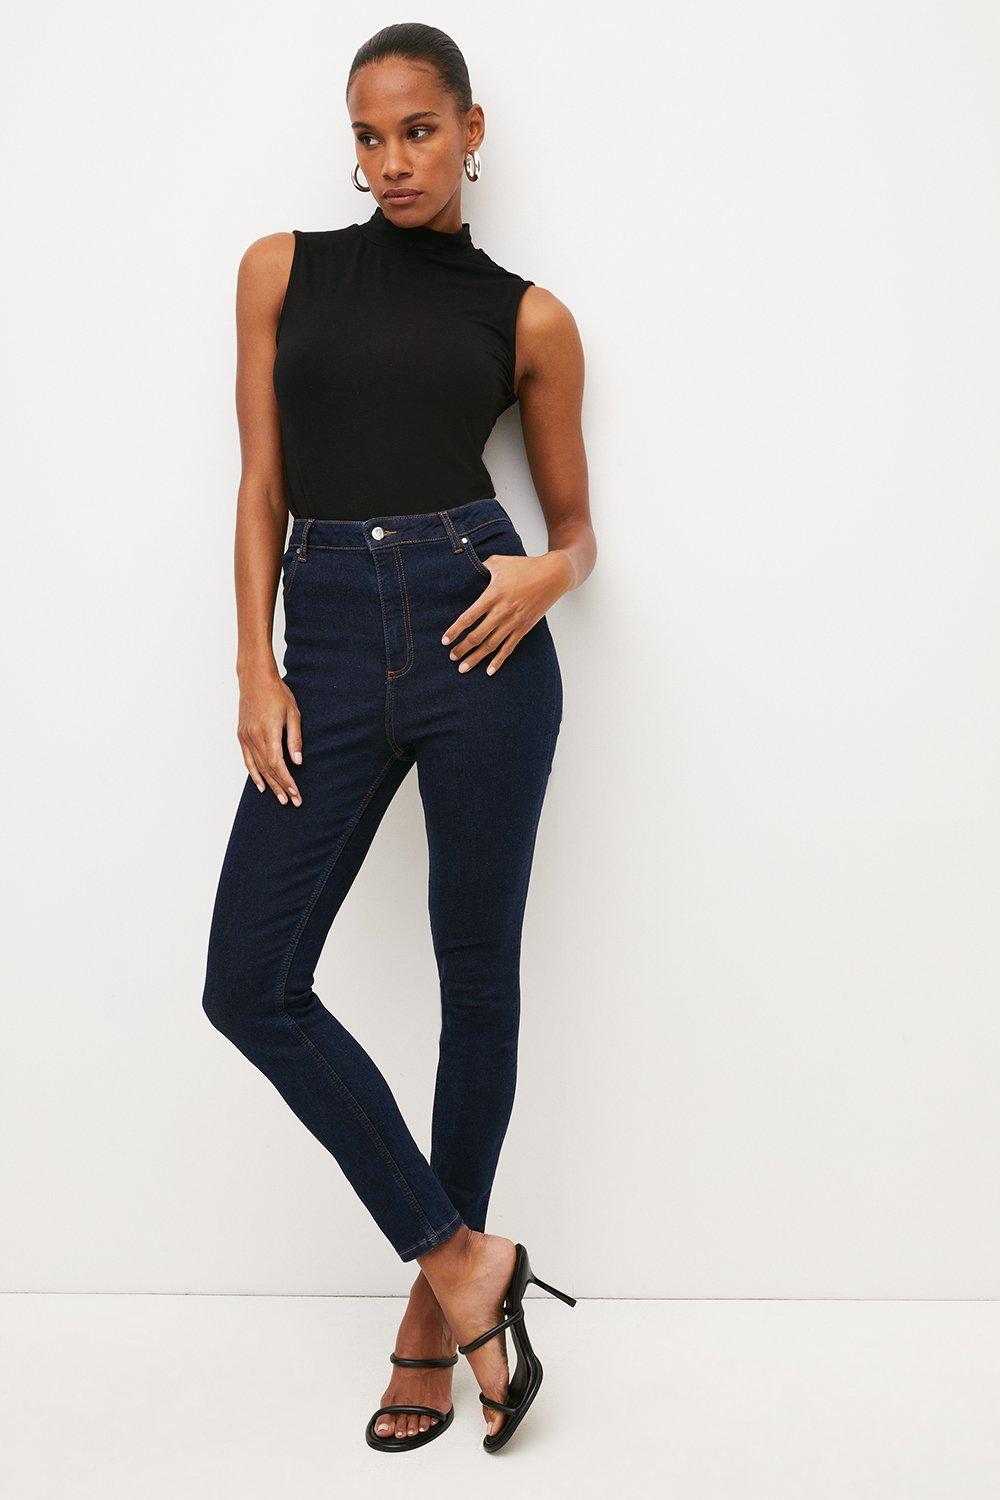 Buy Blue Jeans  Jeggings for Women by AJIO Online  Ajiocom